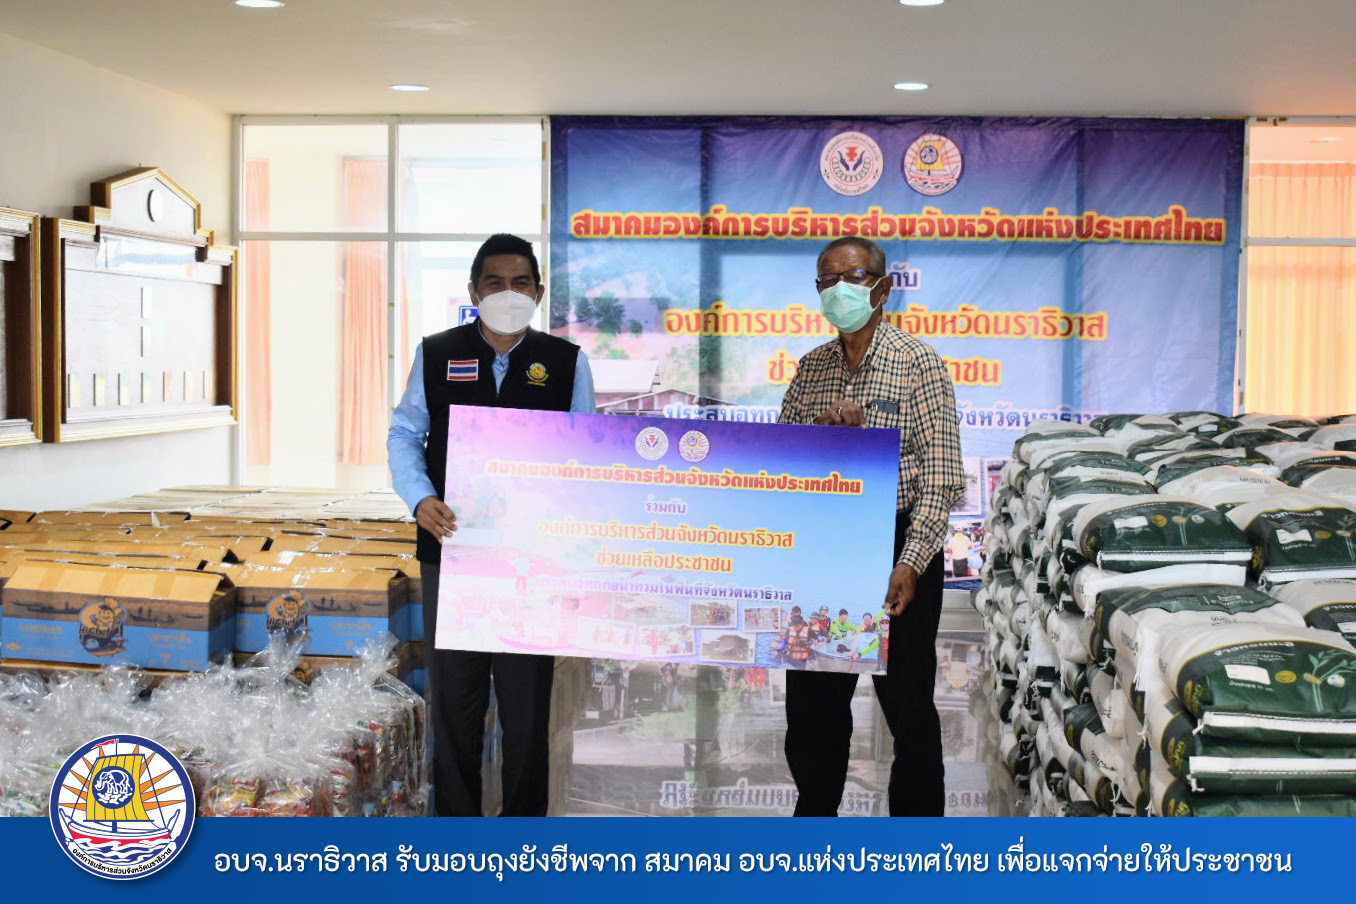 อบจ.นราธิวาส รับมอบถุงยังชีพจาก สมาคม อบจ.แห่งประเทศไทย เพื่อให้ความช่วยเหลือประชาชนในพื้นที่ที่ประสบอุทกภัย